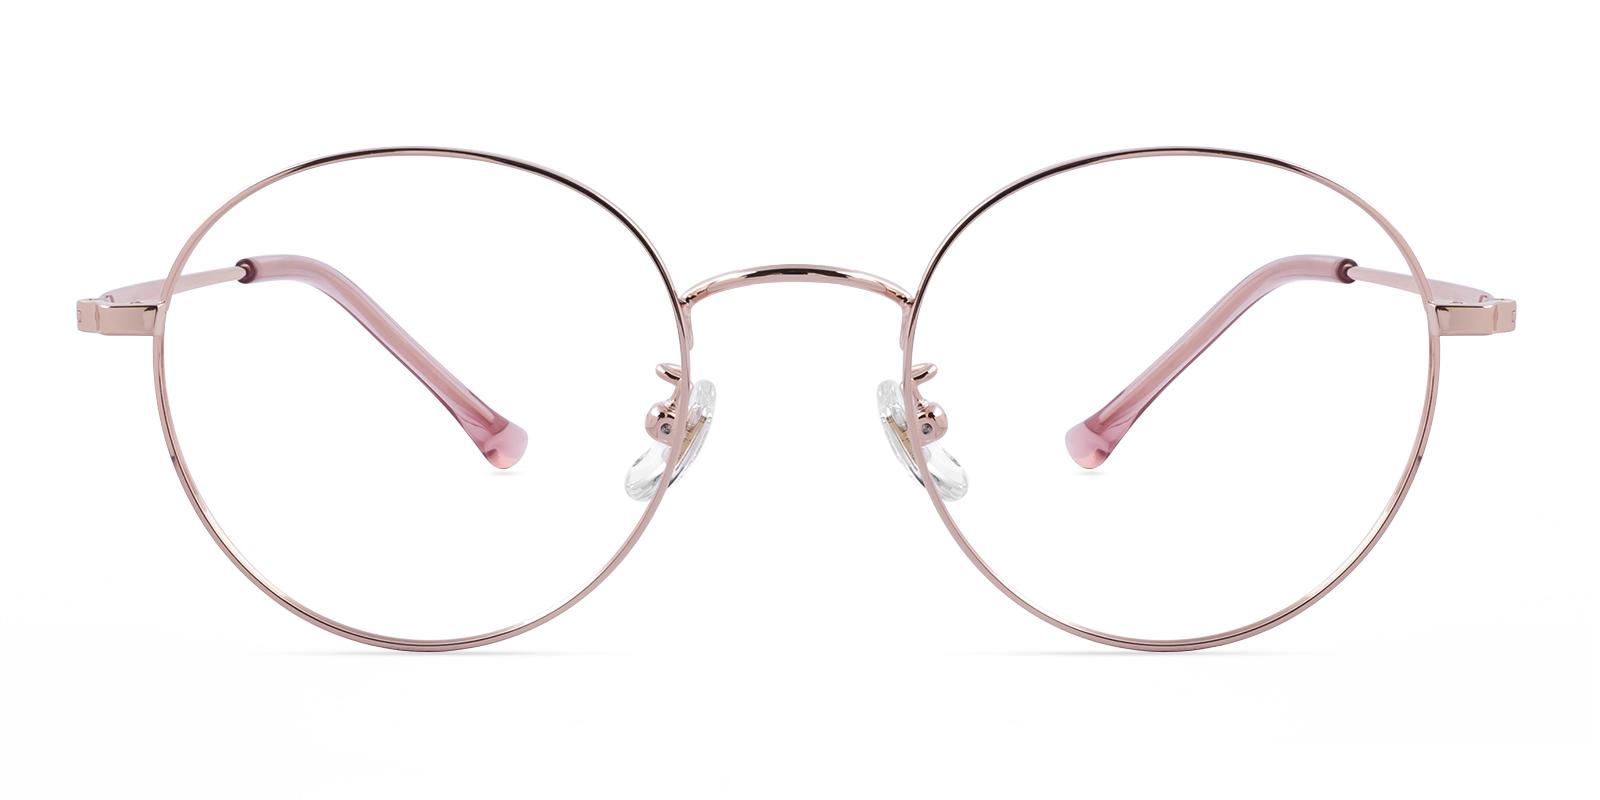 Arborose Rosegold Titanium Eyeglasses , Lightweight , NosePads Frames from ABBE Glasses